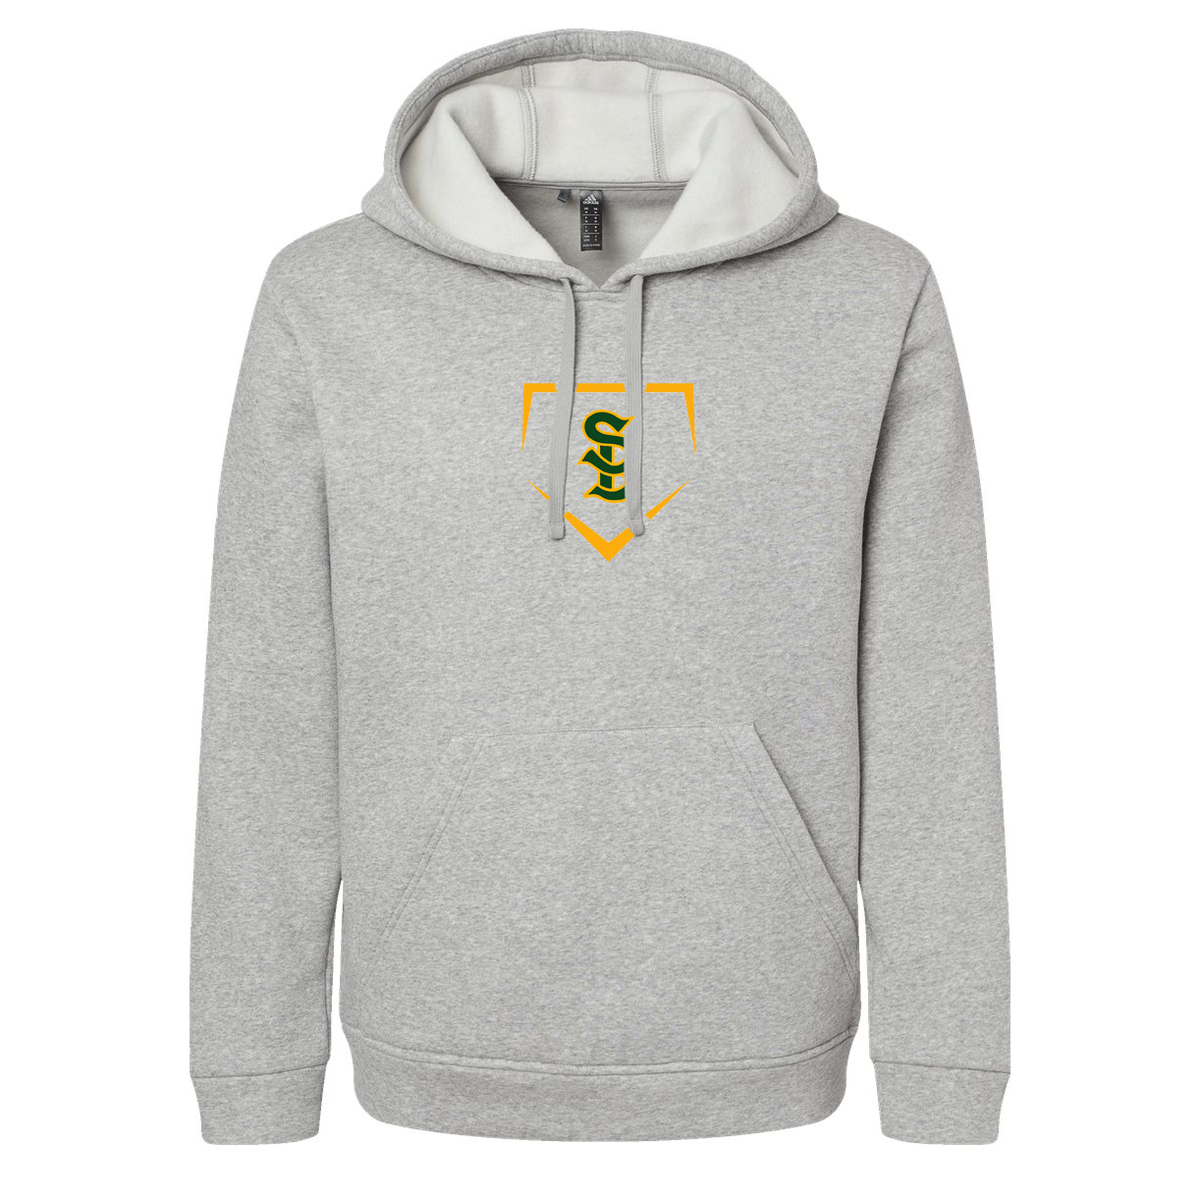 Santa Barbara HS Baseball Adidas Fleece Hooded Sweatshirt